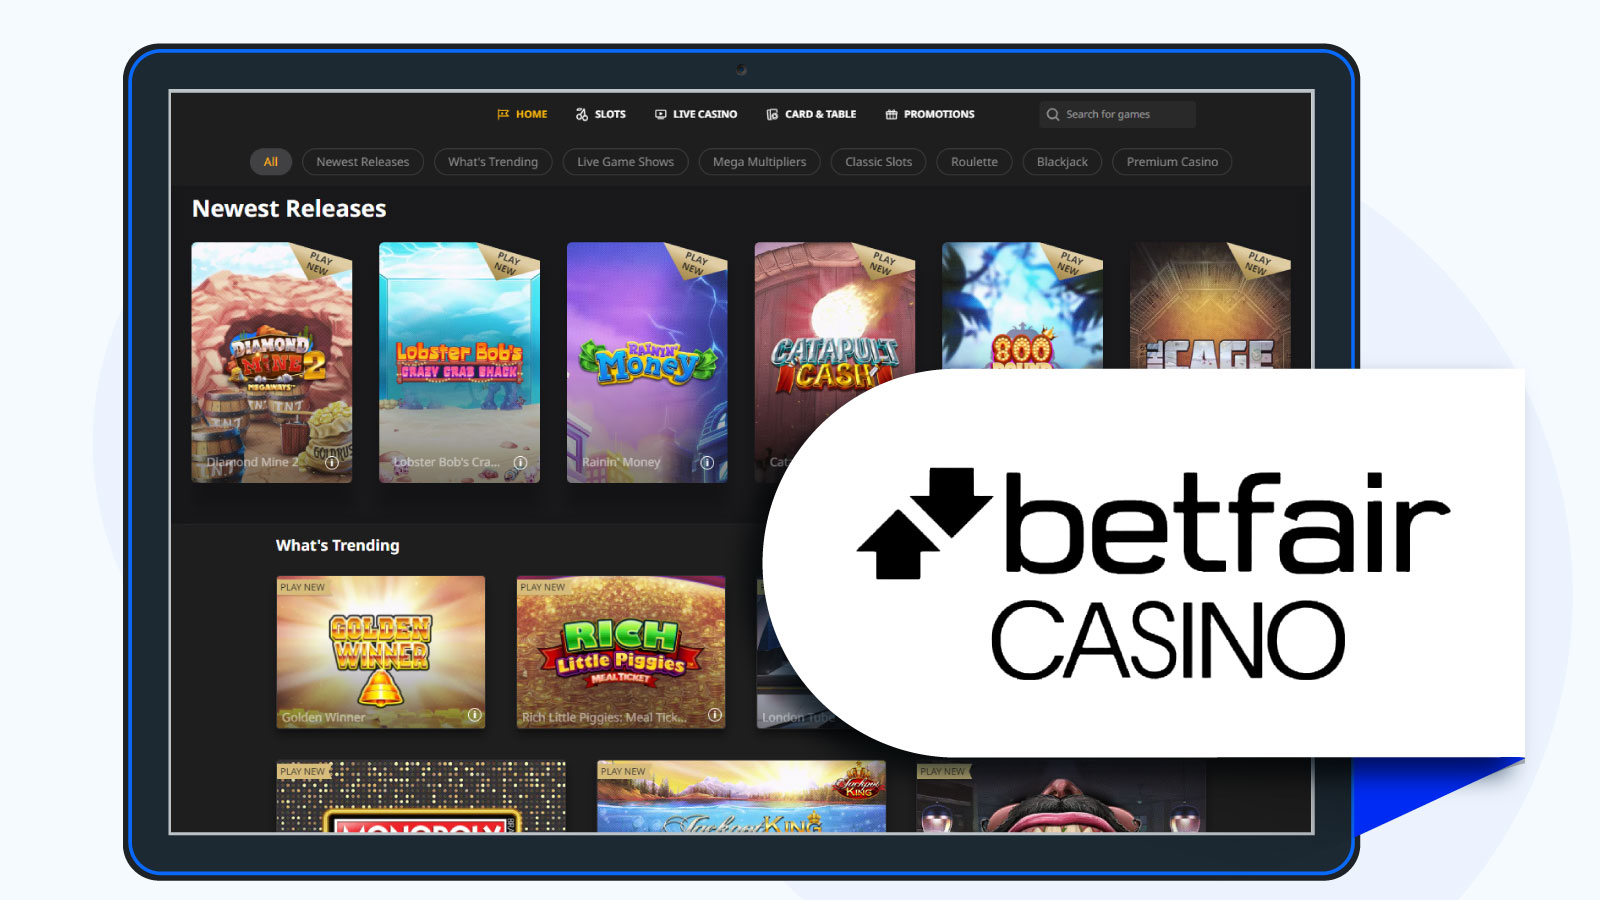 Betfair Casino homepage